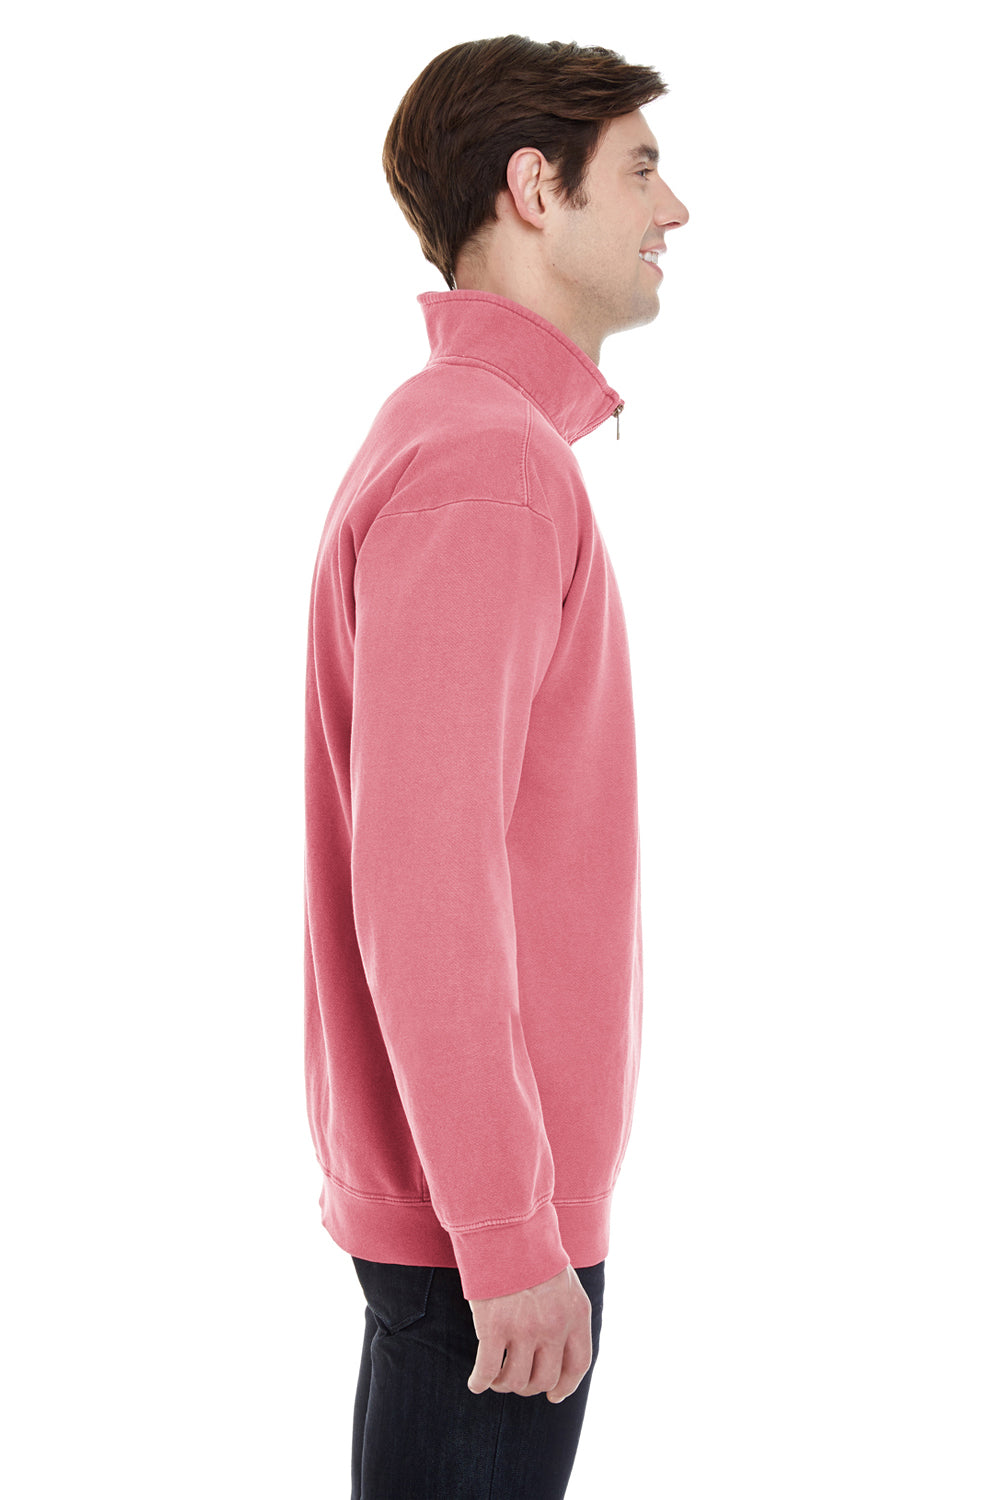 Comfort Colors 1580 Mens 1/4 Zip Sweatshirt Crimson Red Side